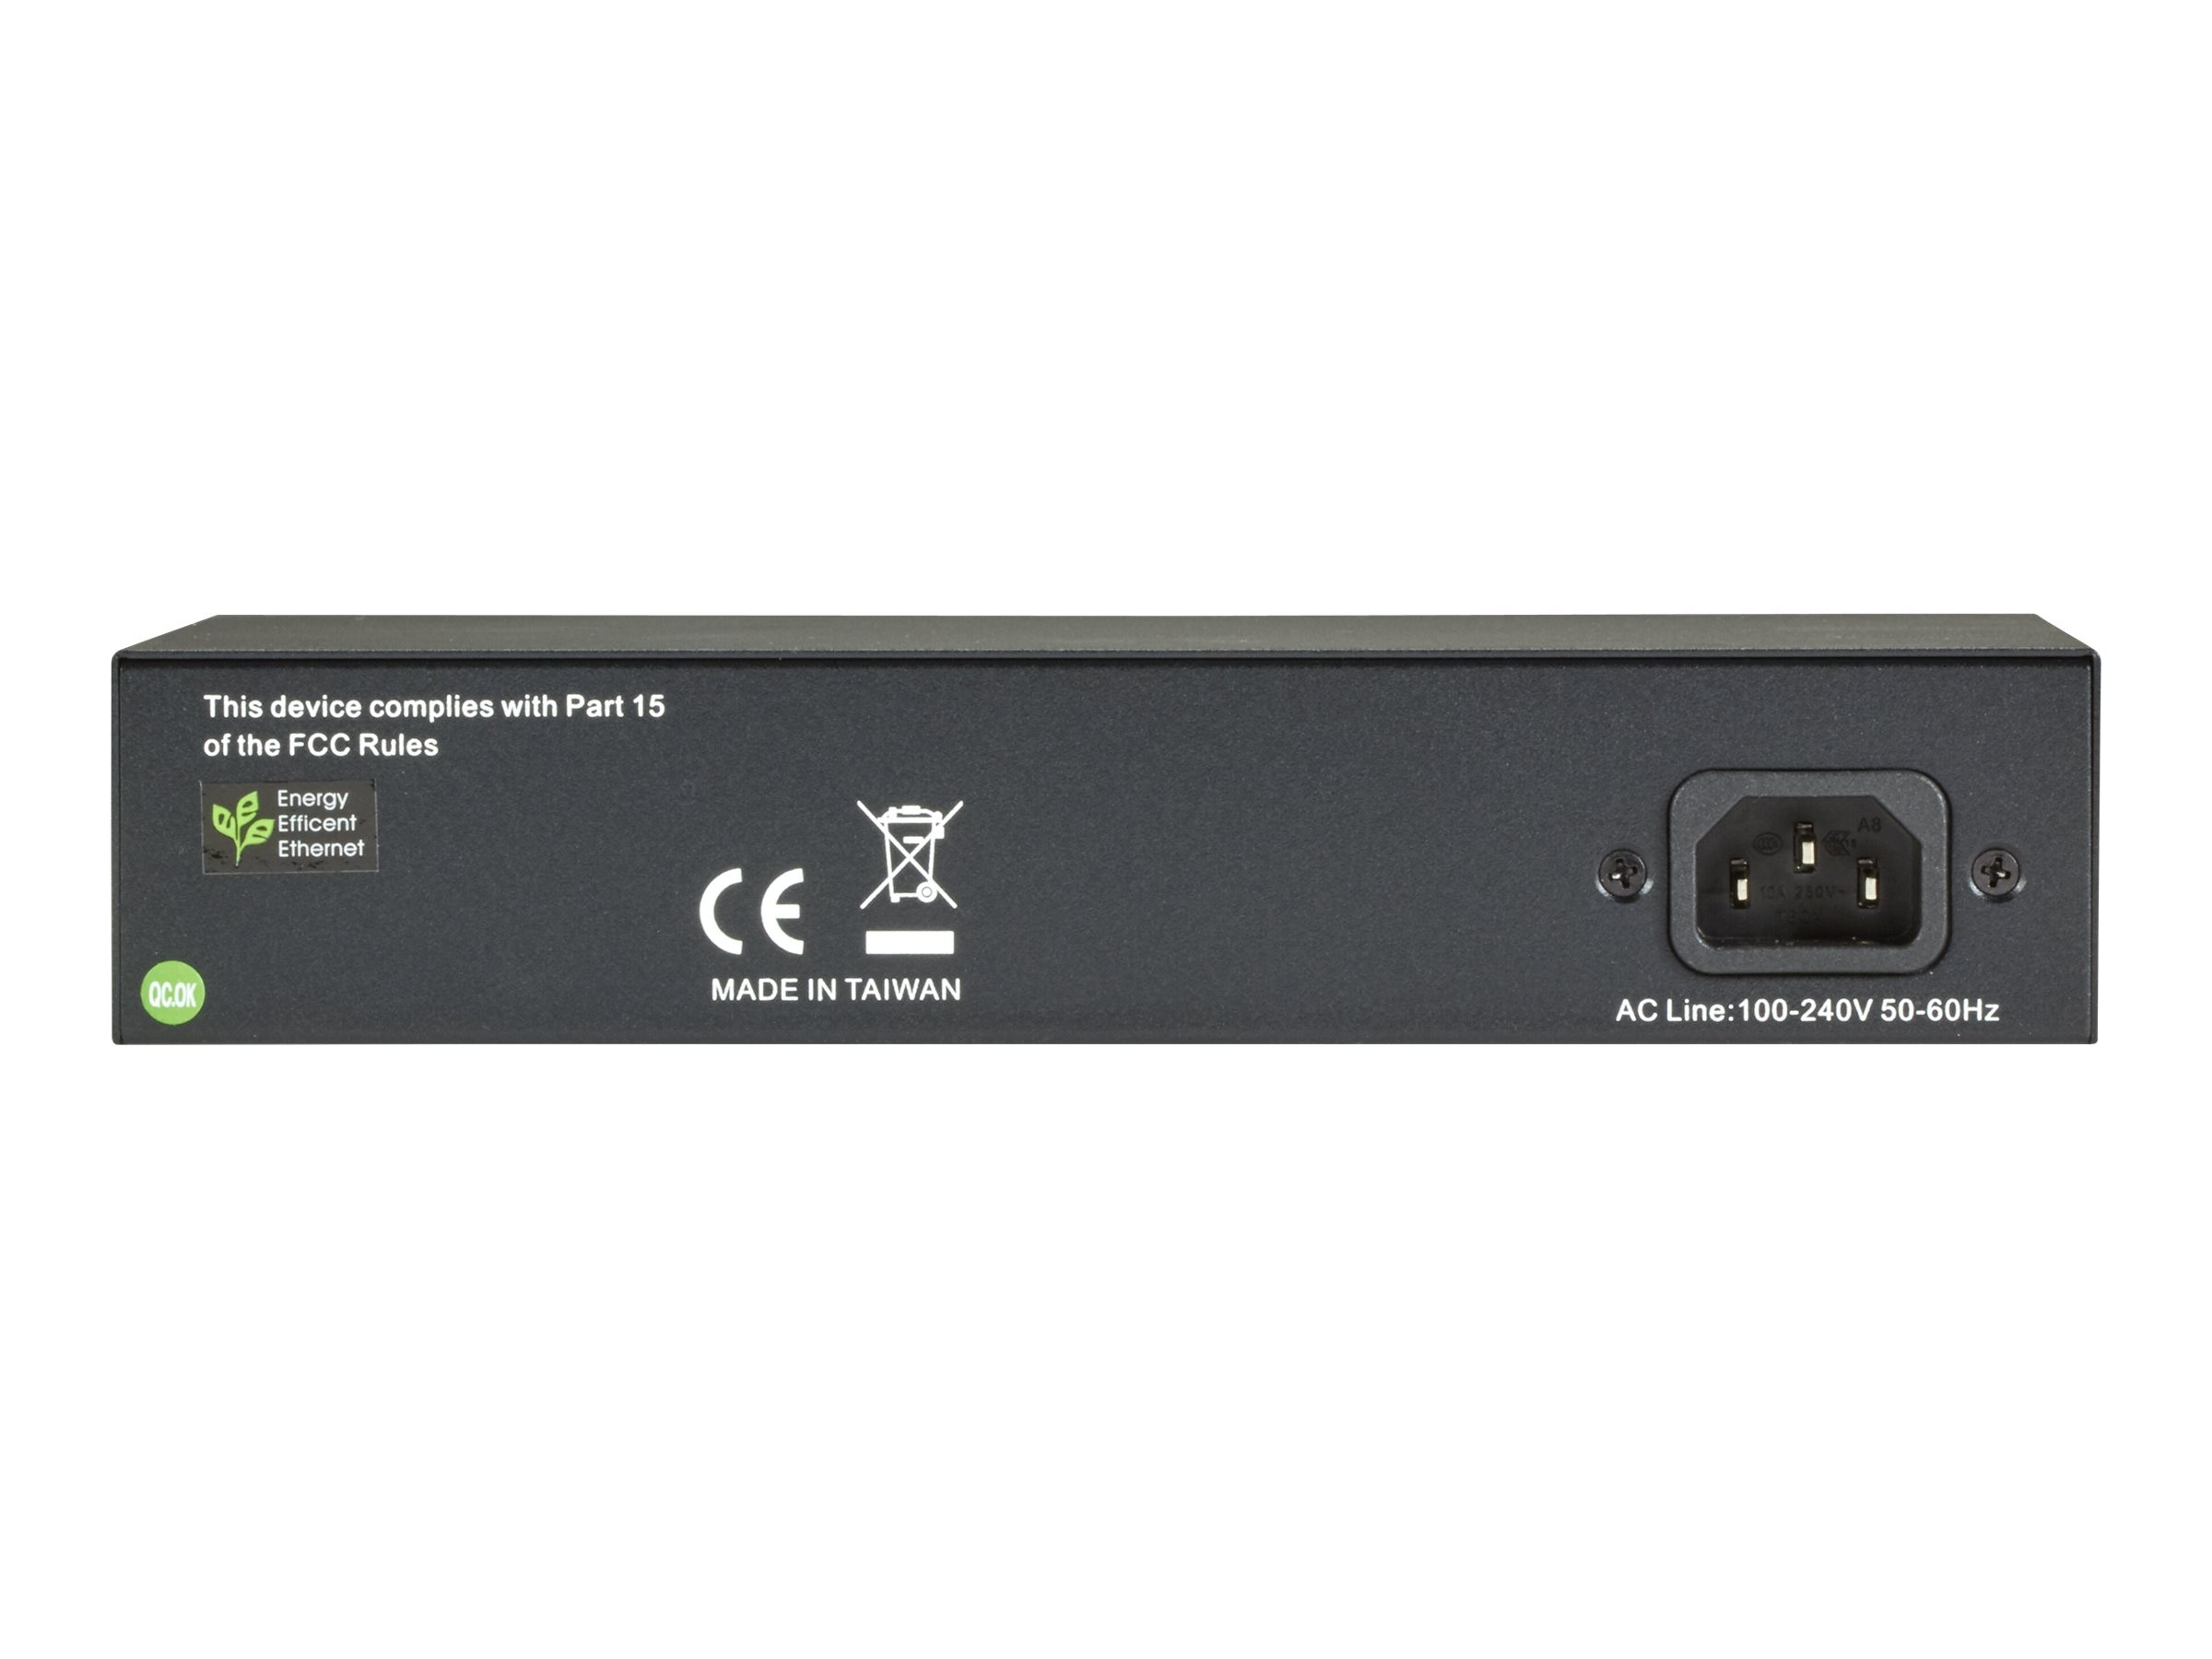 Black Box 8-Port GbE Mngd L2+ Switch w 2xGbE RJ45 SFP (LGB1110A)